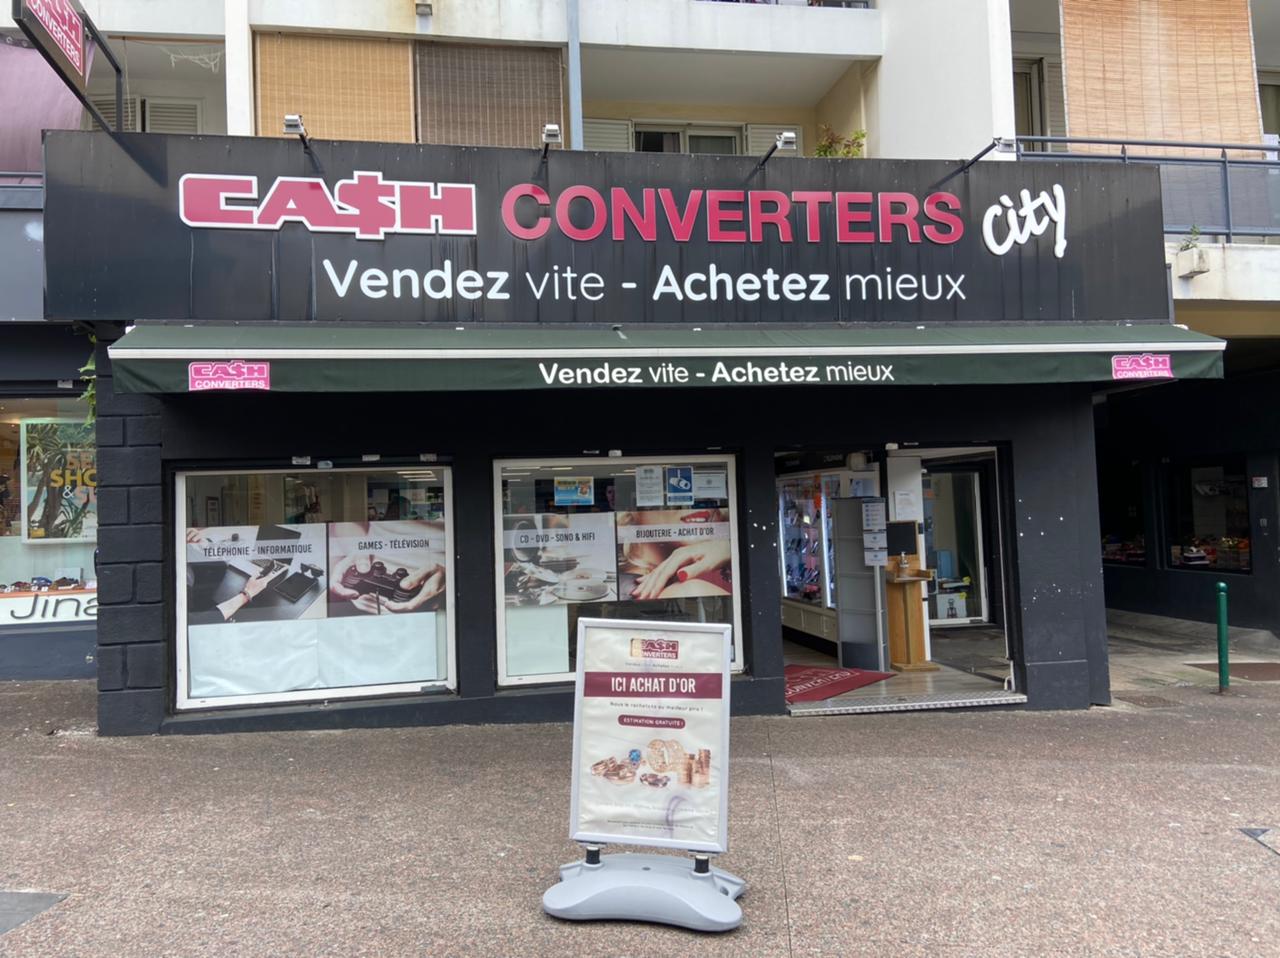 Cash Converters Saint-Denis